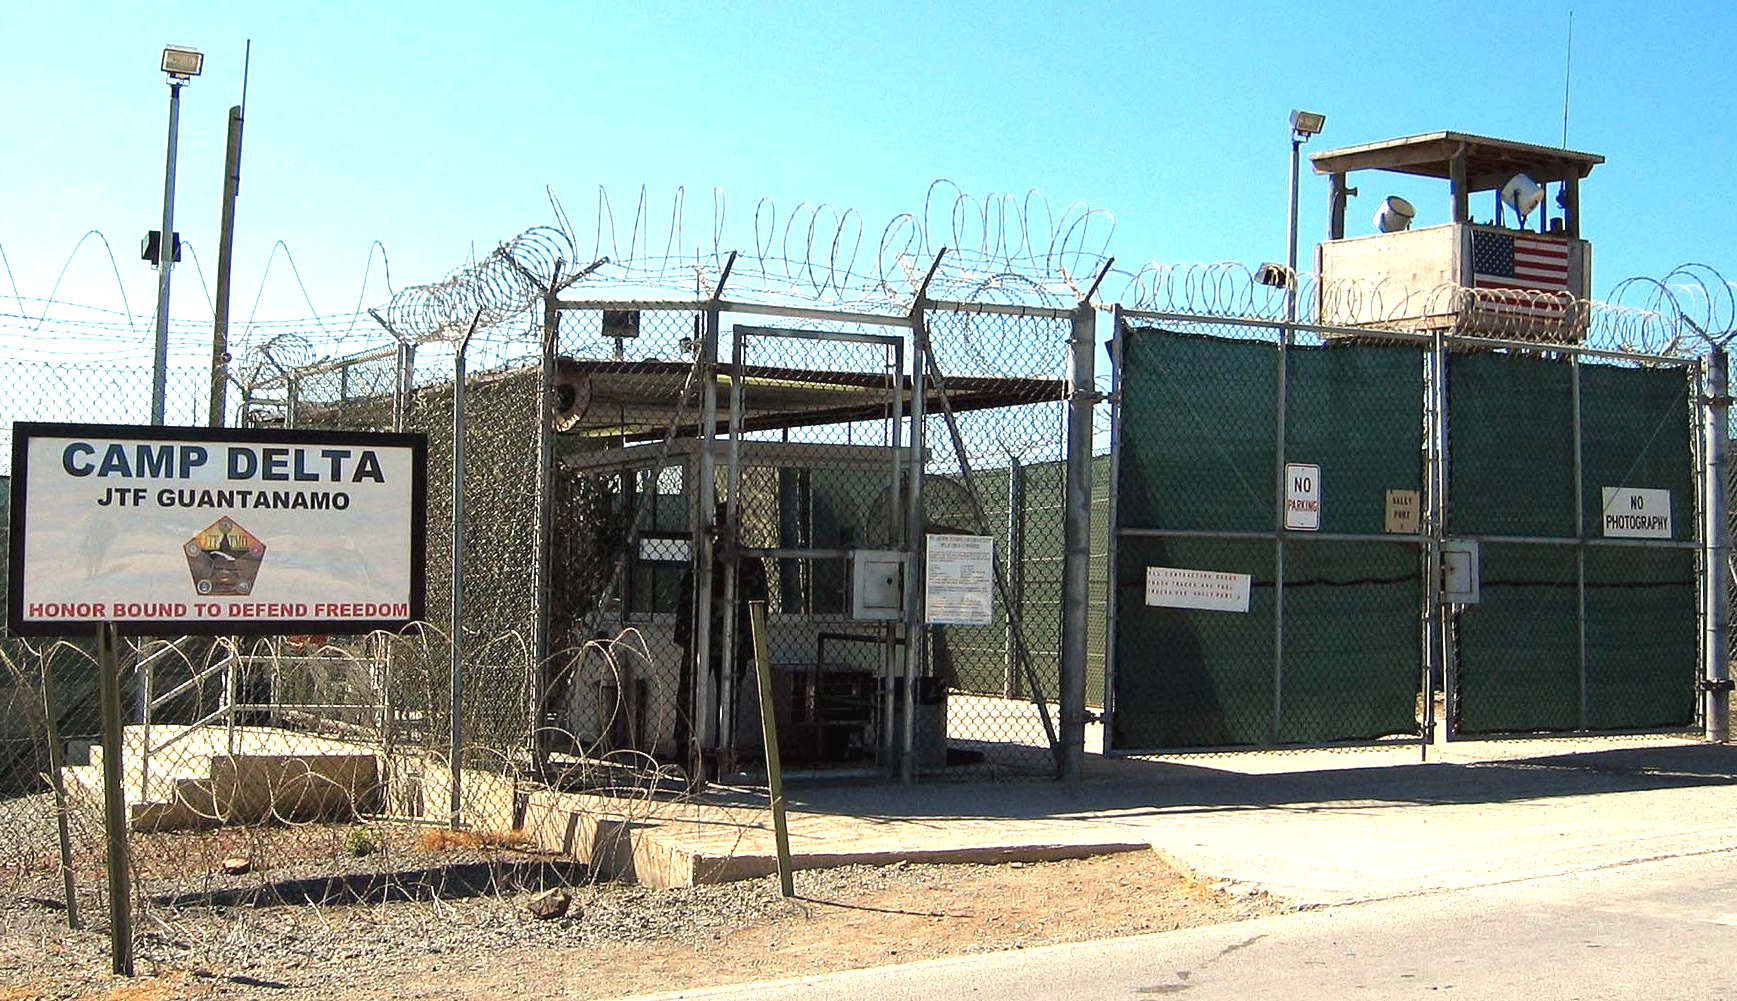 Camp Delta, Guantanamo Bay, Cuba